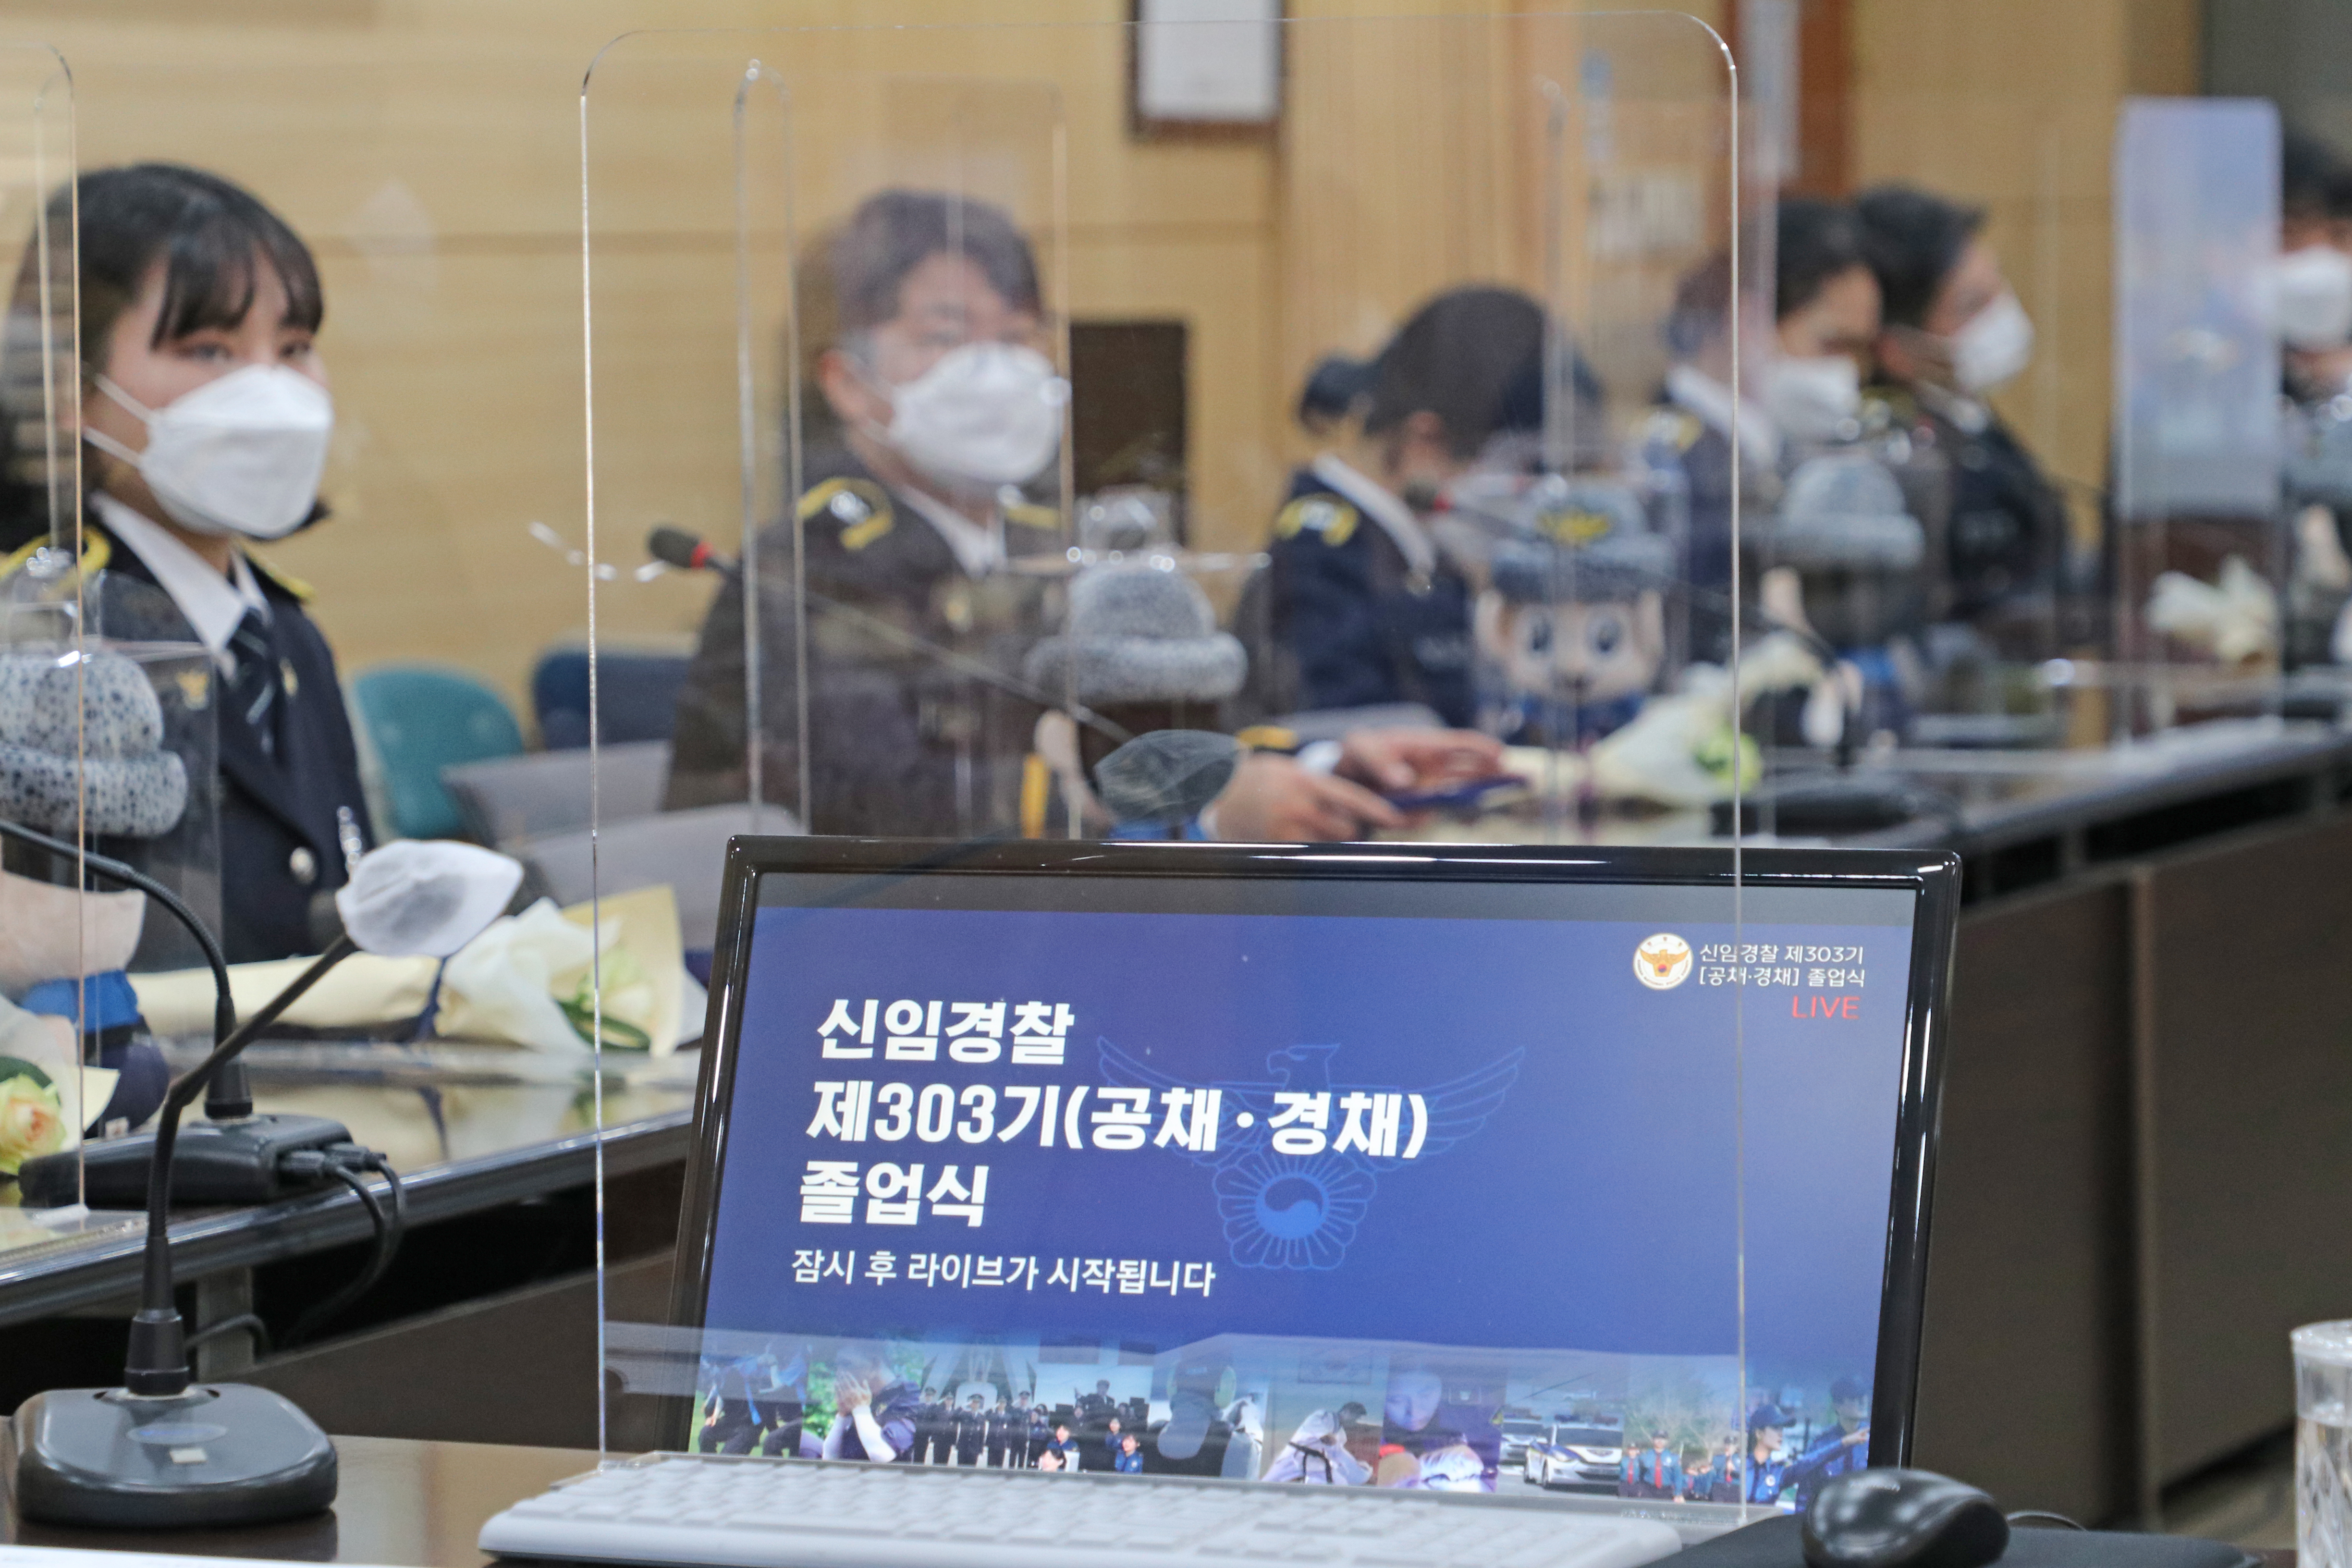 동부서, 신임 제303기(공채·경채) 졸업식